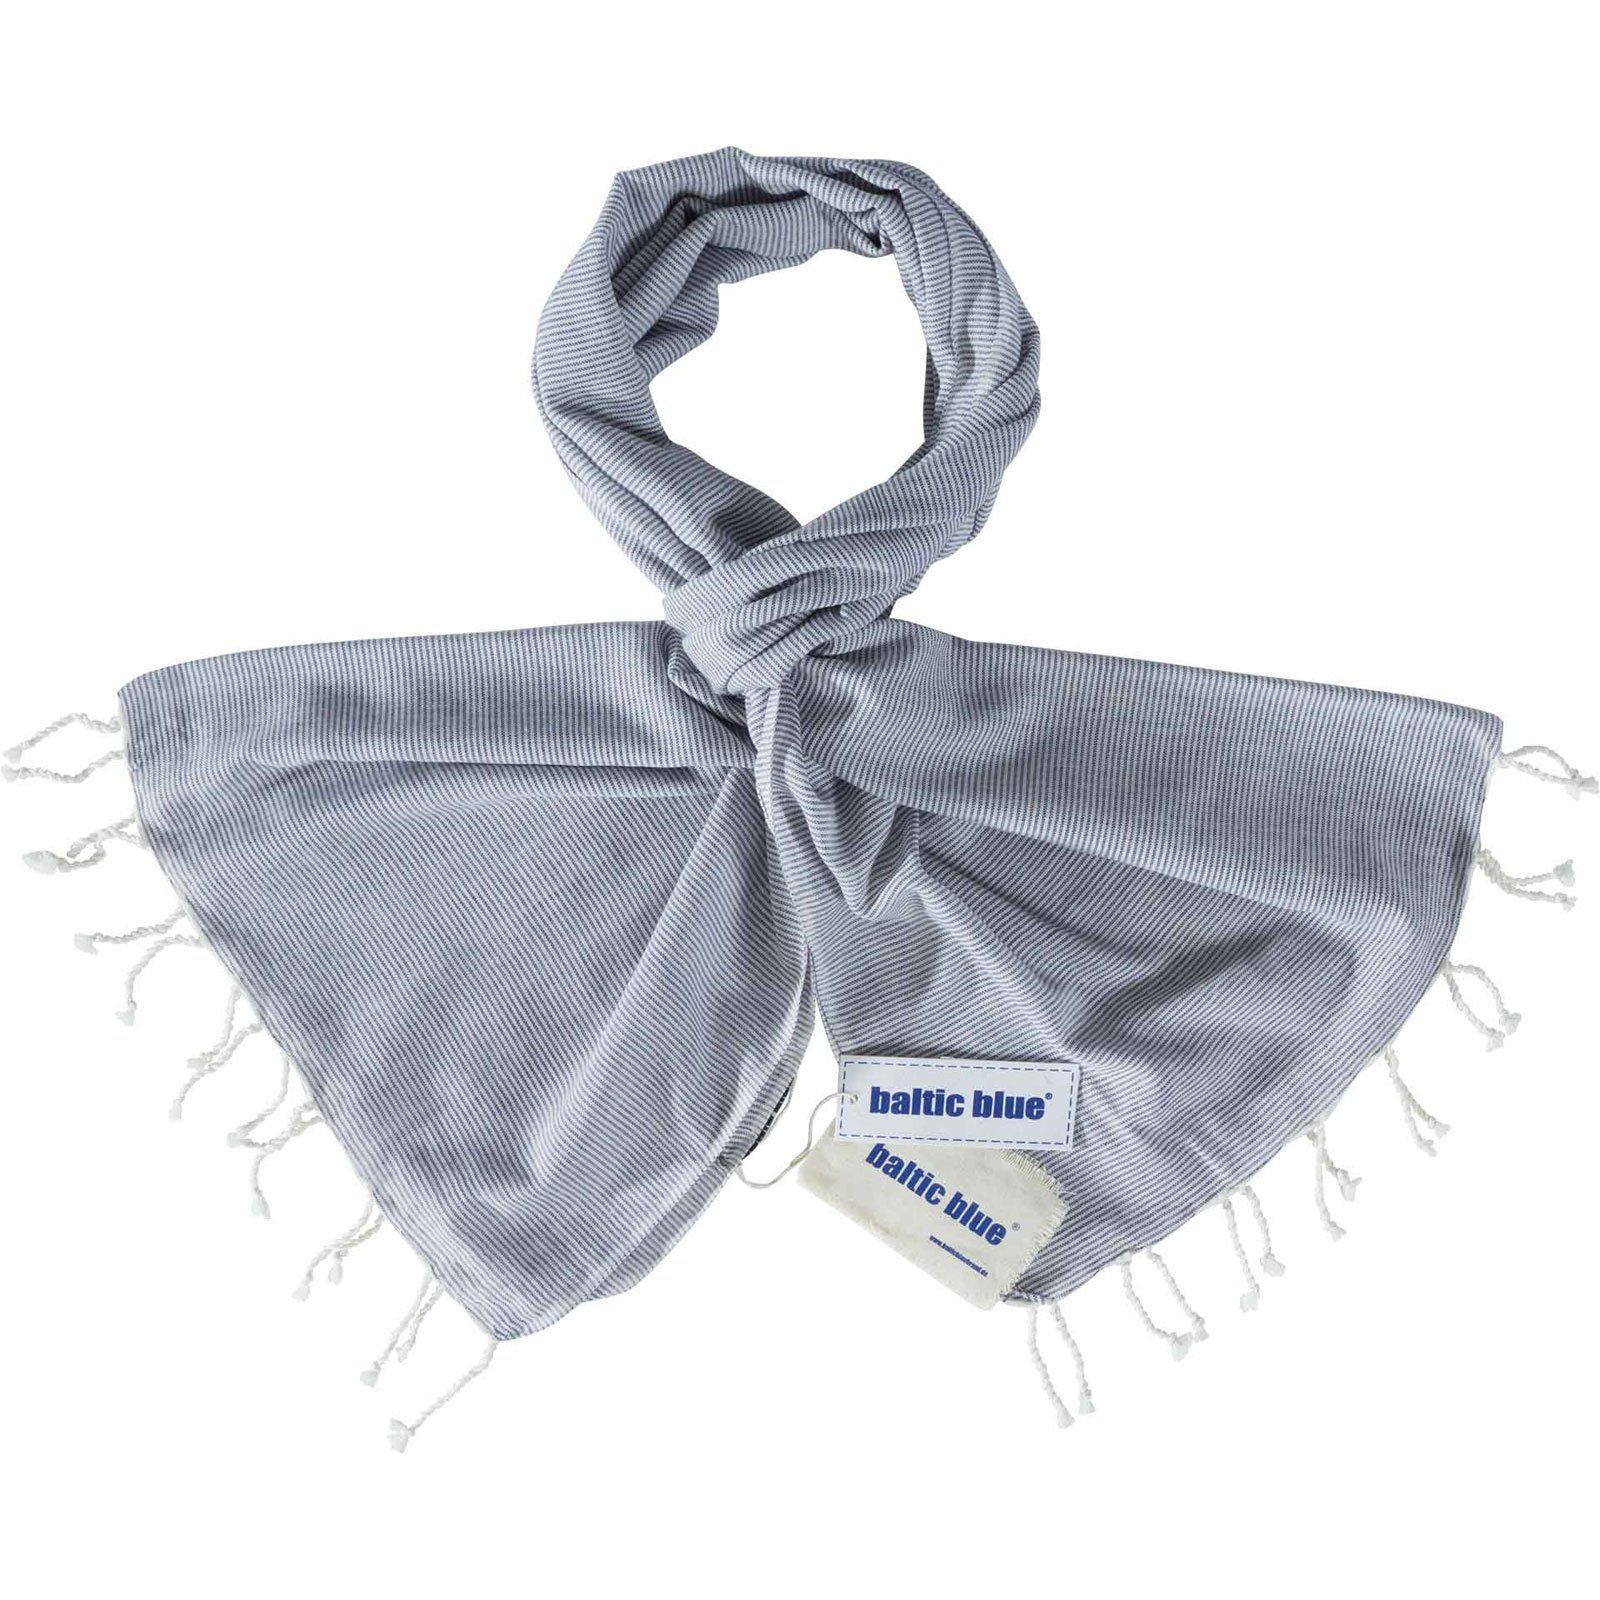 baltic blue Schal, Unisex Tuch Silke mit Streifen Blau-Weiß - Streifenschal Modeschal ca. 70x200 cm hellblau